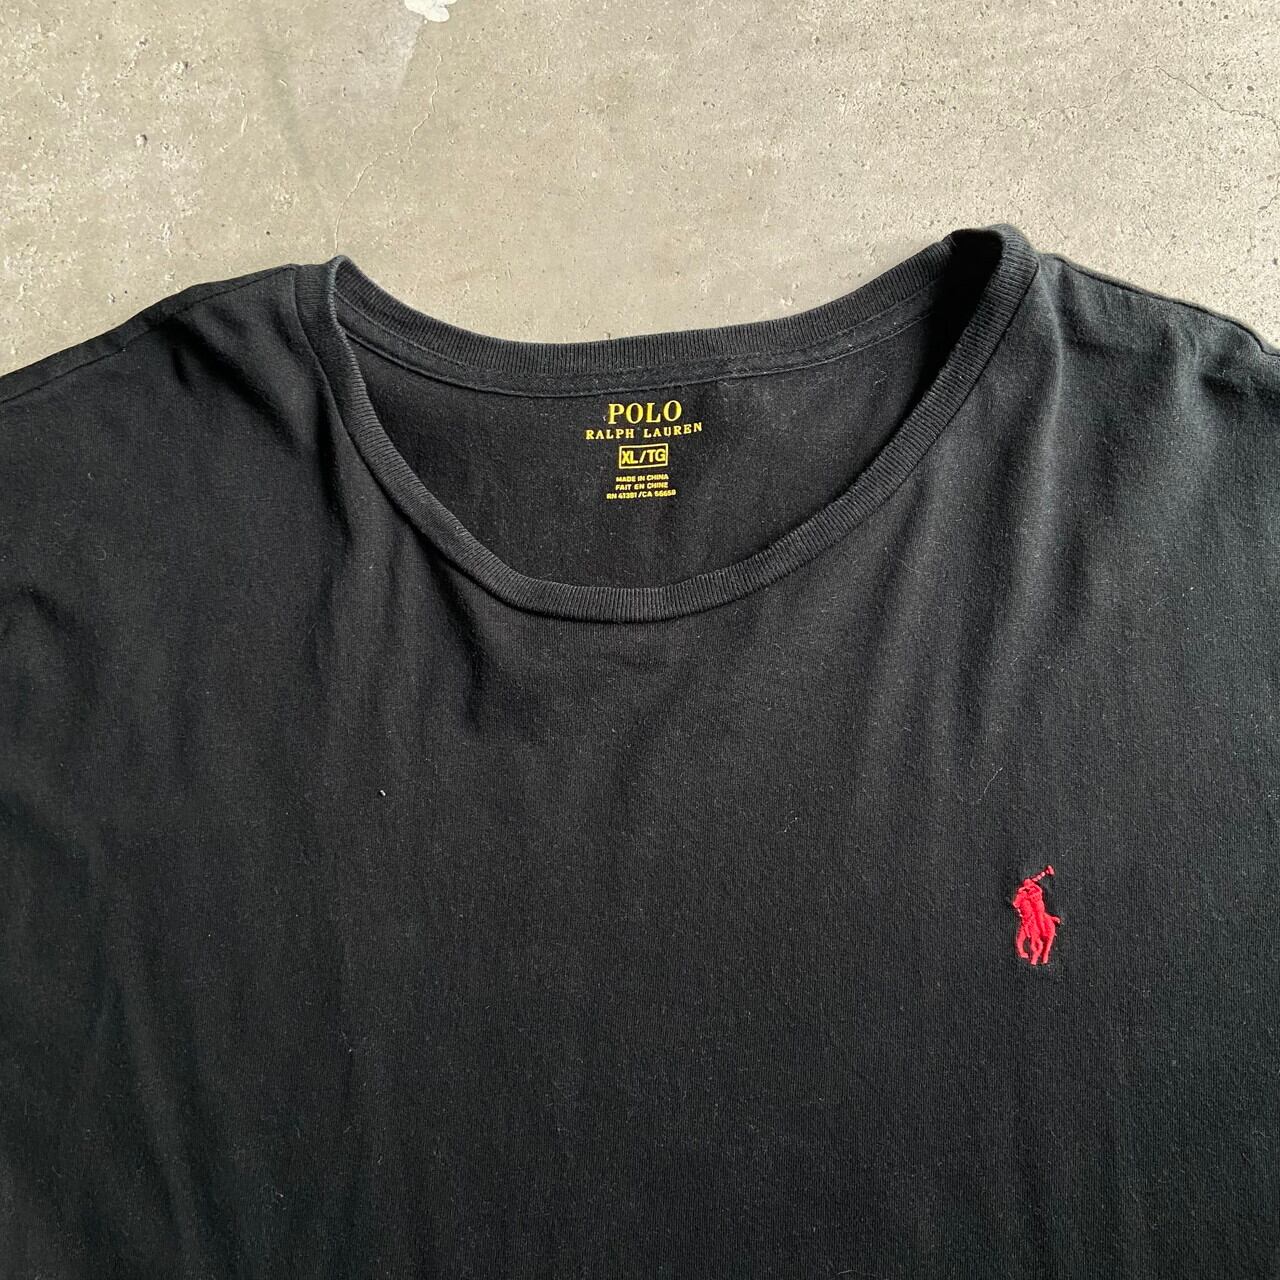 Polo Ralph Lauren ポロラルフローレン ワンポイントロゴ 刺繍 Tシャツ